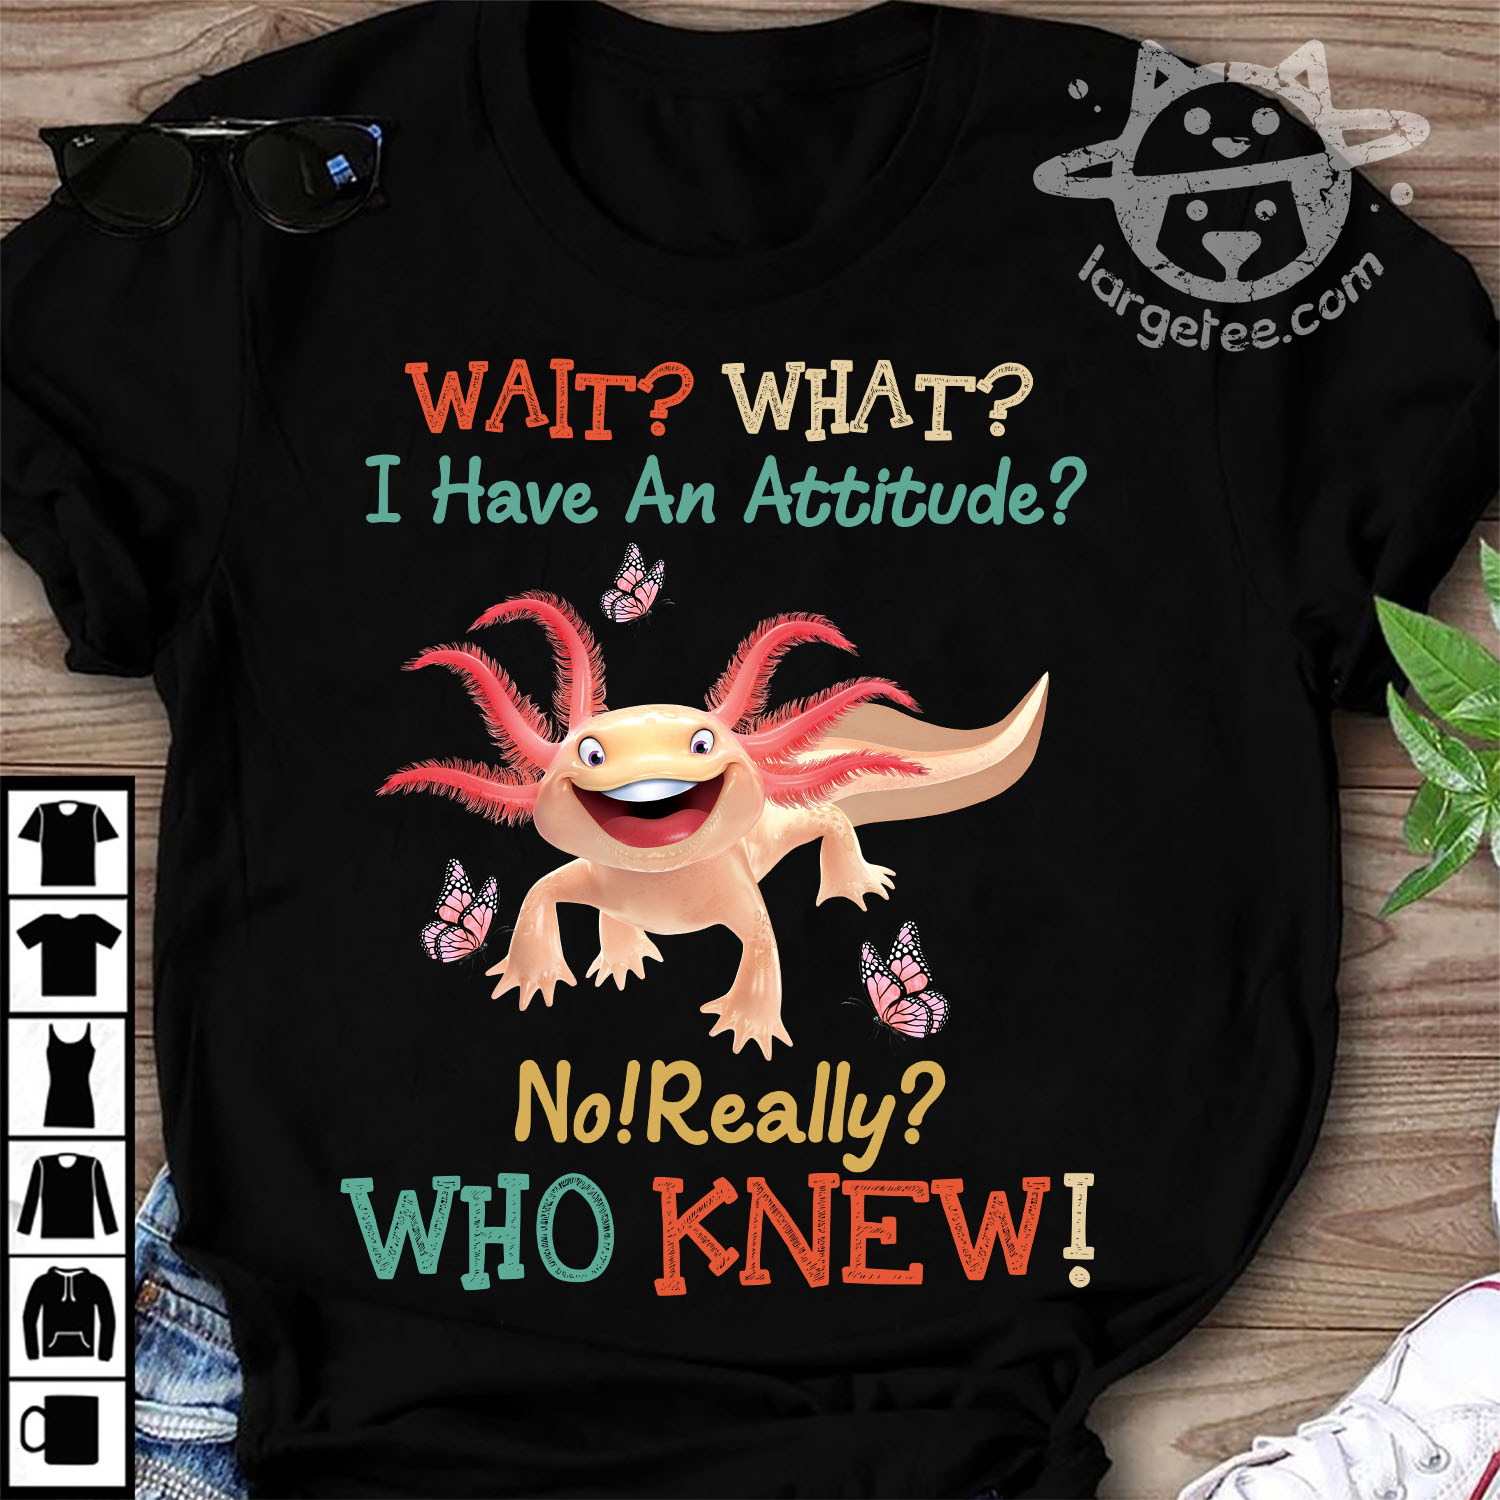 I have an attitude - axolotl mexico, axolotl attitude